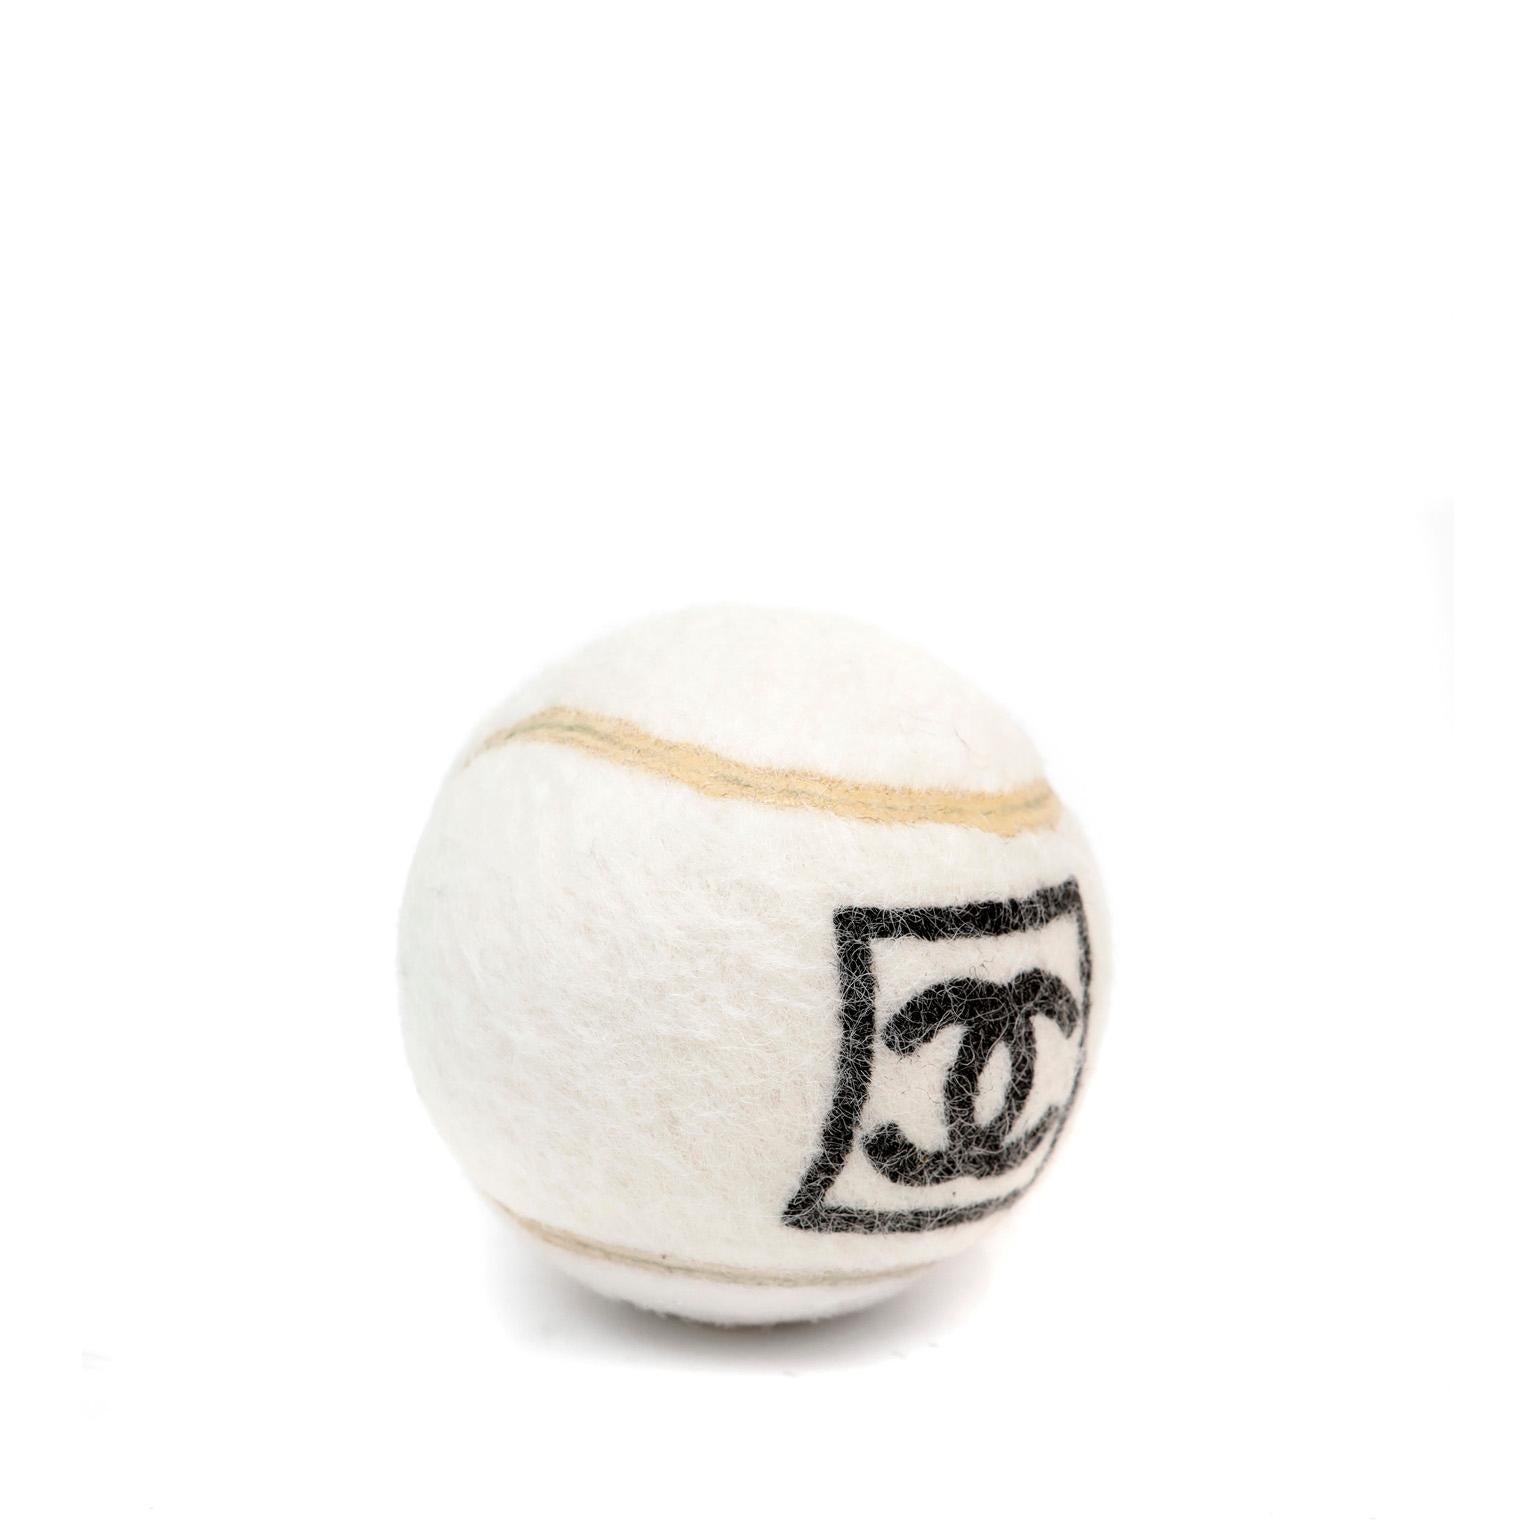 Dieser authentische Chanel Tennisball ist in tadellosem, unbenutztem Zustand.  Collection'S 2017.  Weiß mit schwarzem, ineinander greifendem CC-Logo. 

PBF 11850